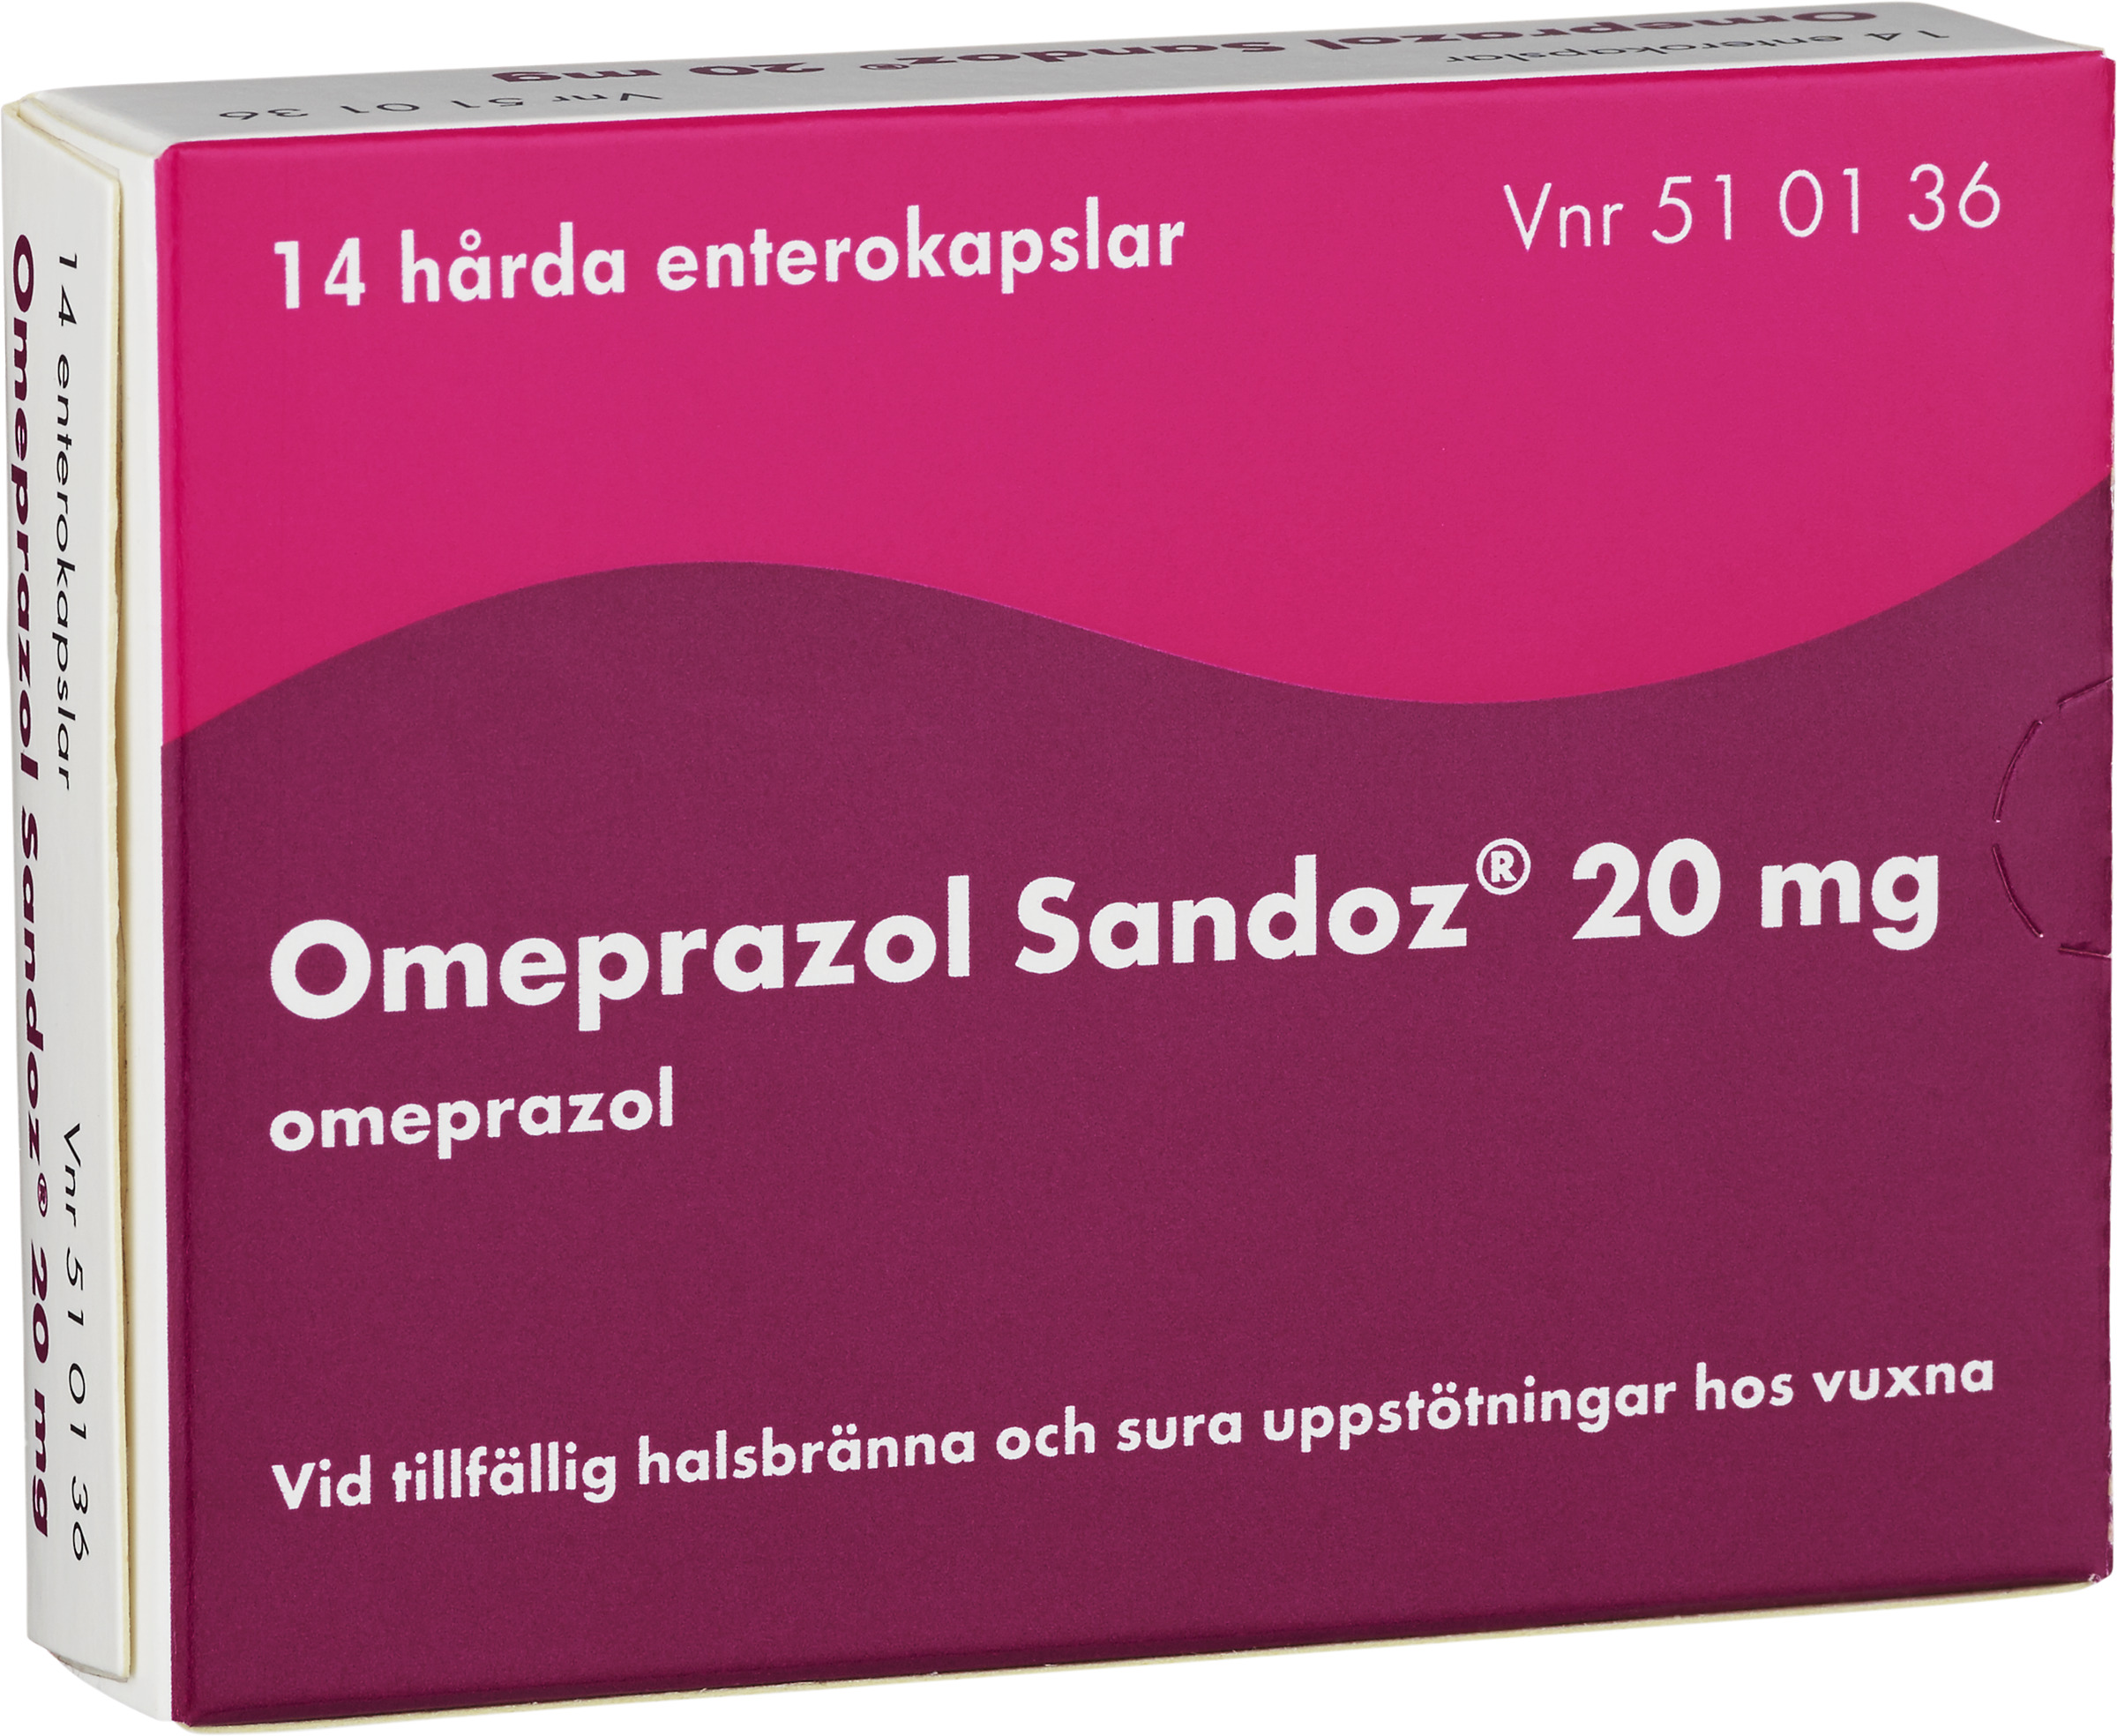 Omeprazol Sandoz Enterokapsel, hård 20mg Blister, 14kapslar